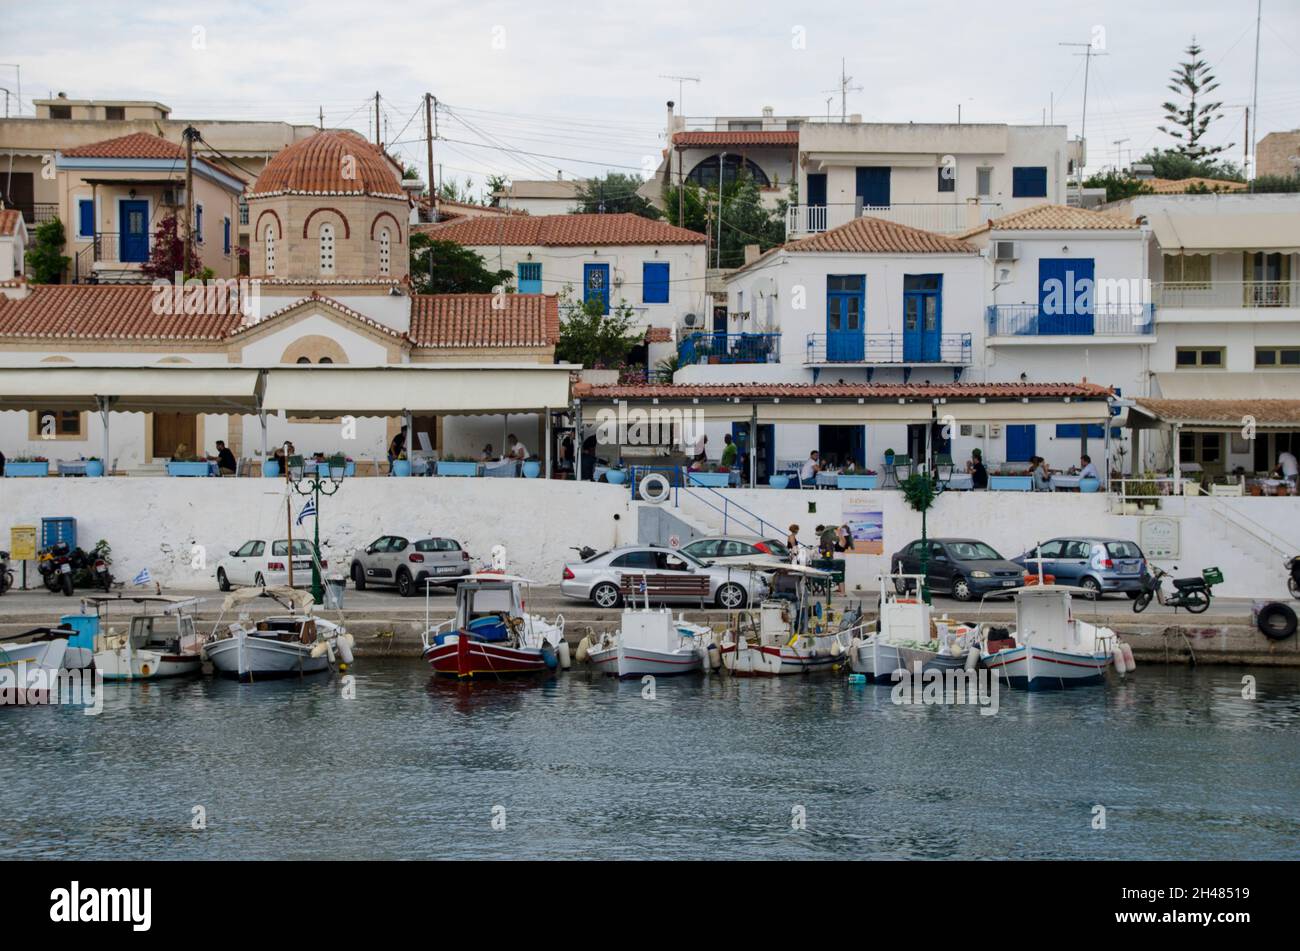 Il porto di Egina è una delle isole Saroniche della Grecia nel Golfo Saronico, a 27 chilometri (17 miglia) da Atene. Tradizione deriva il nome da Foto Stock